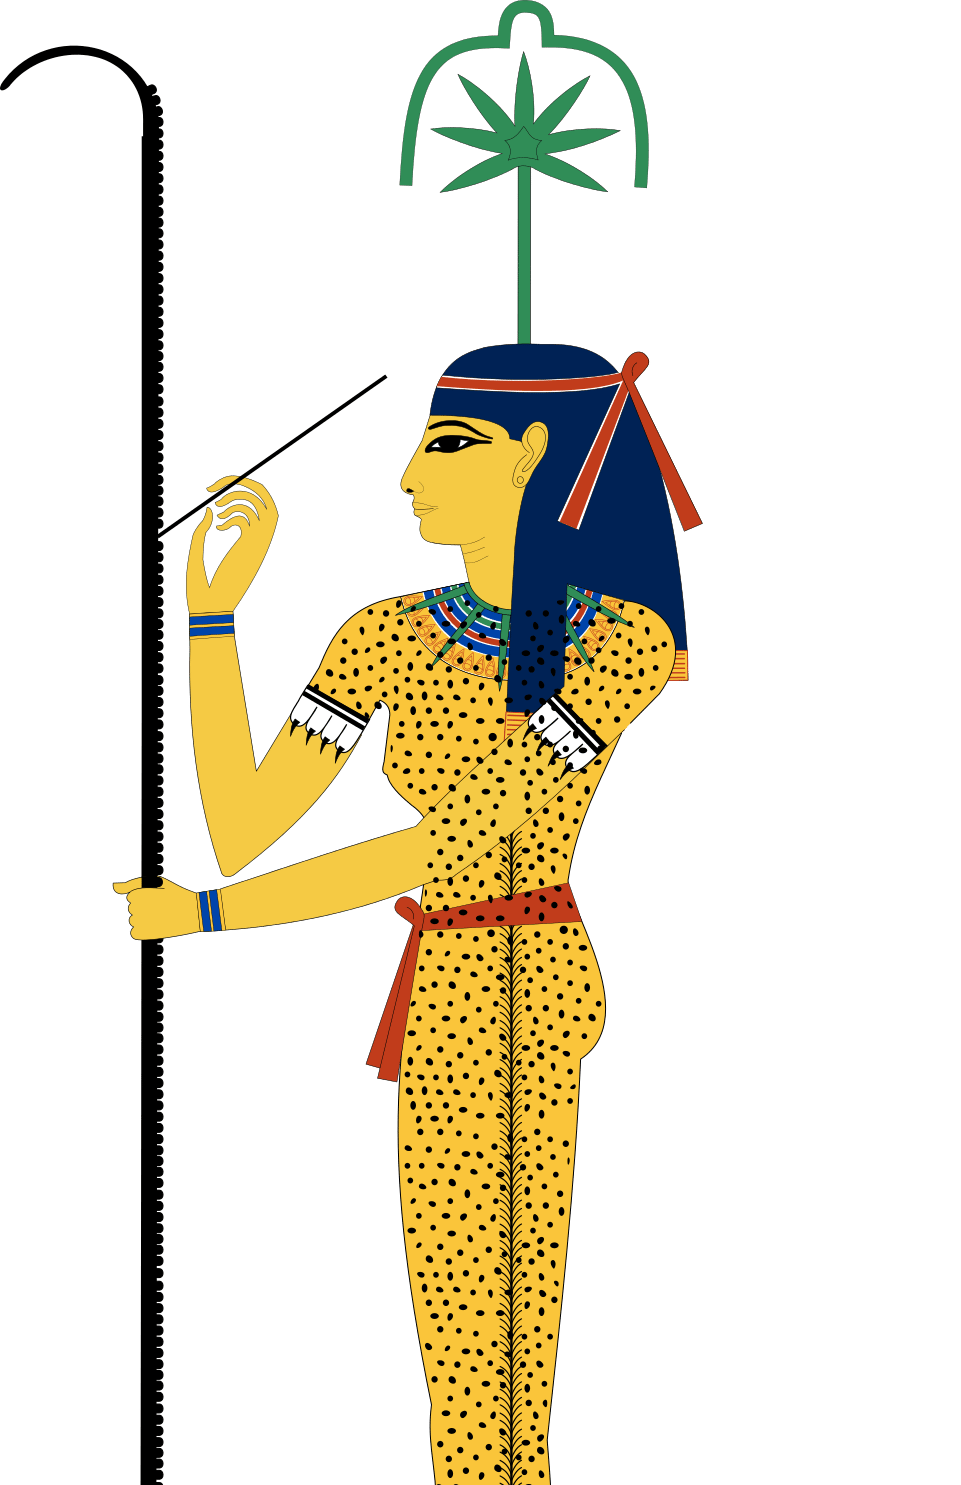 בגדים מנומרים במצרים העתיקה